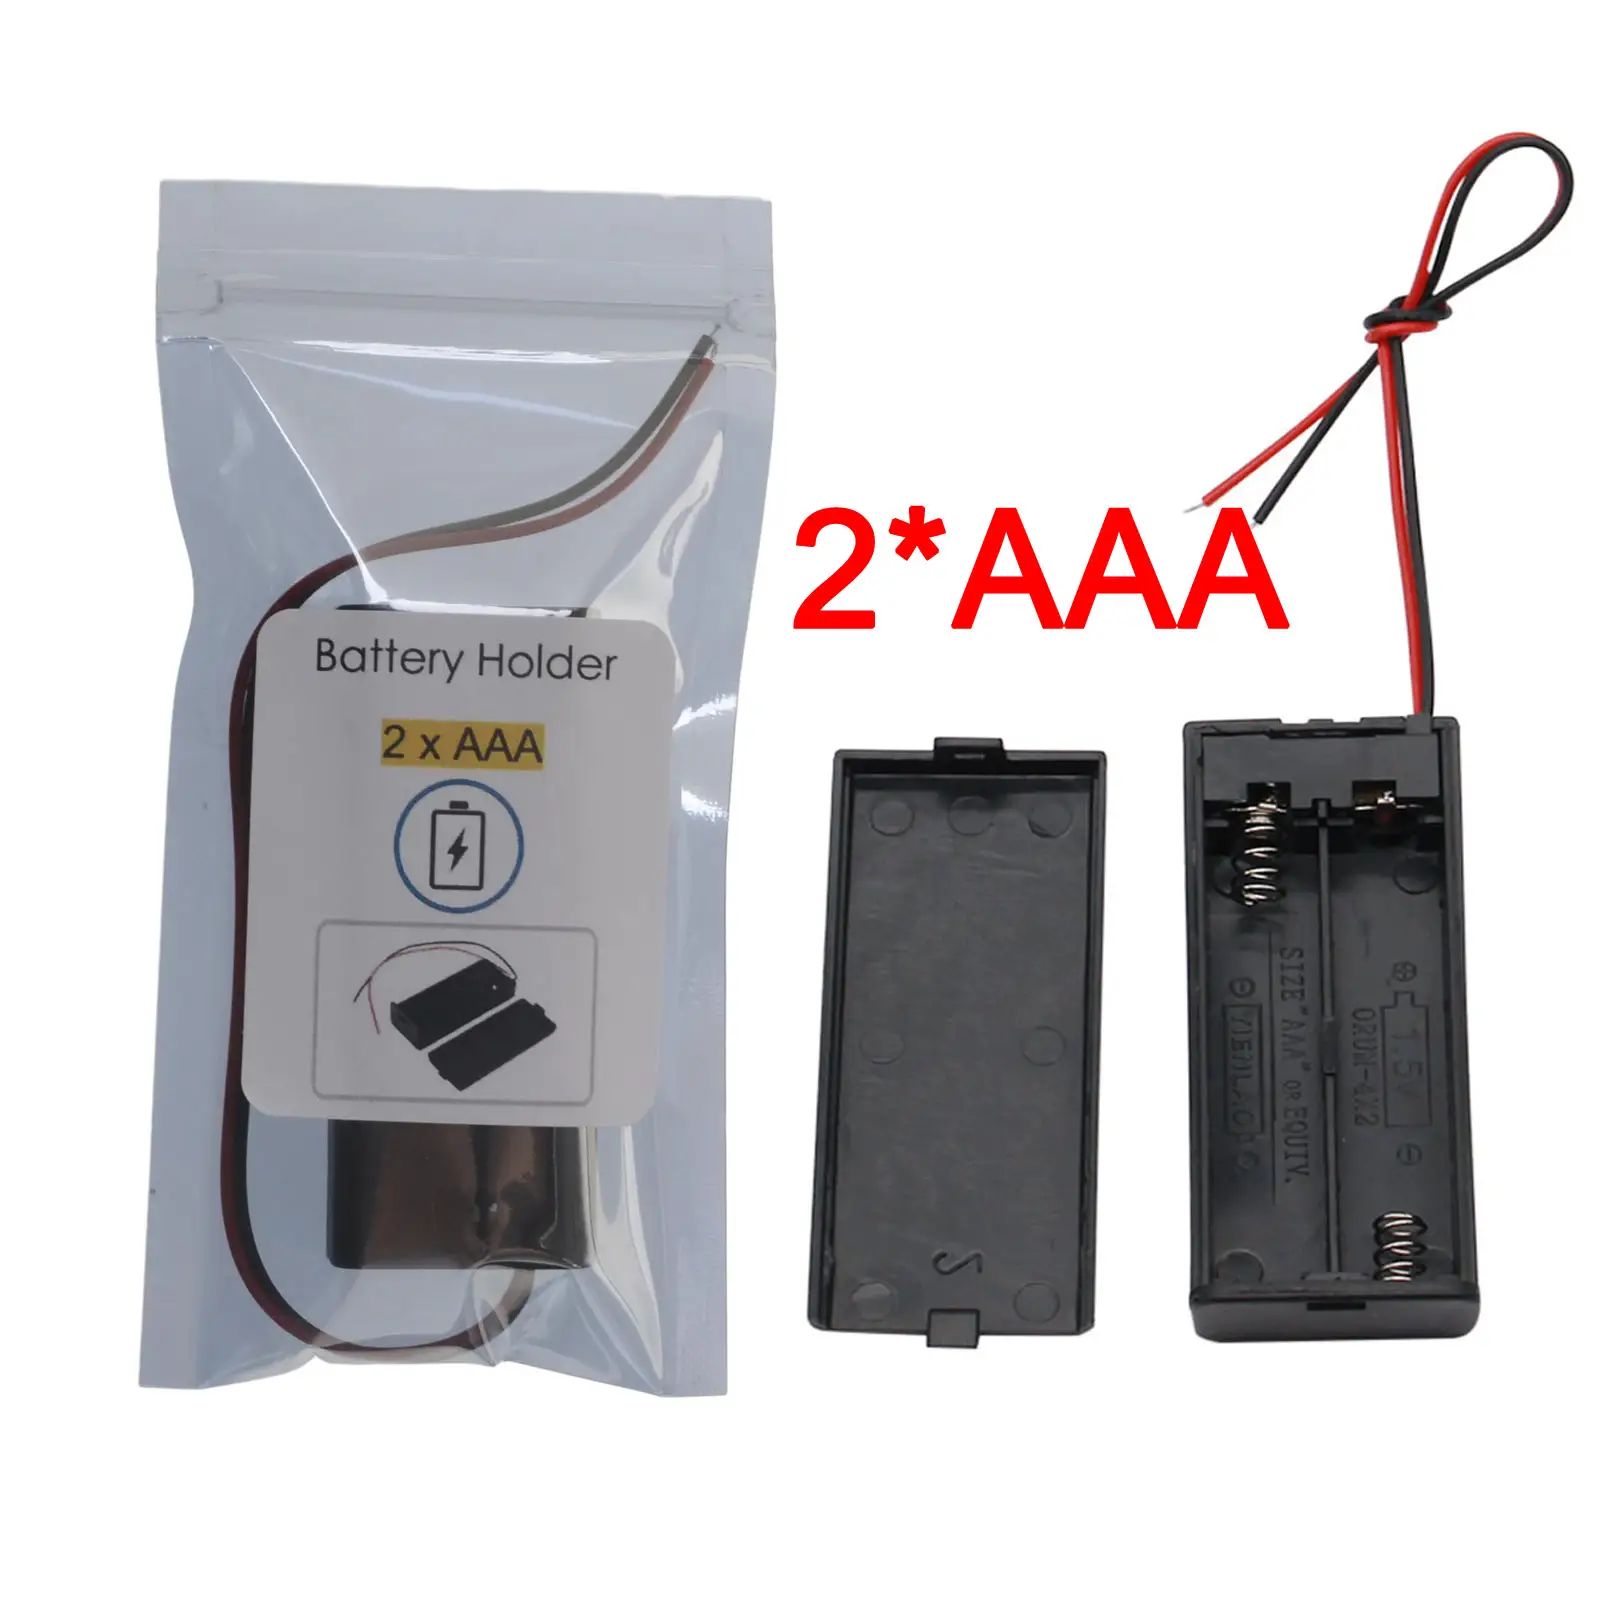 2 * AAA pil tutucu kılıf kutusu ile tel ile ON/OFF anahtarı kapağı 2 yuvası standart pil konteyner